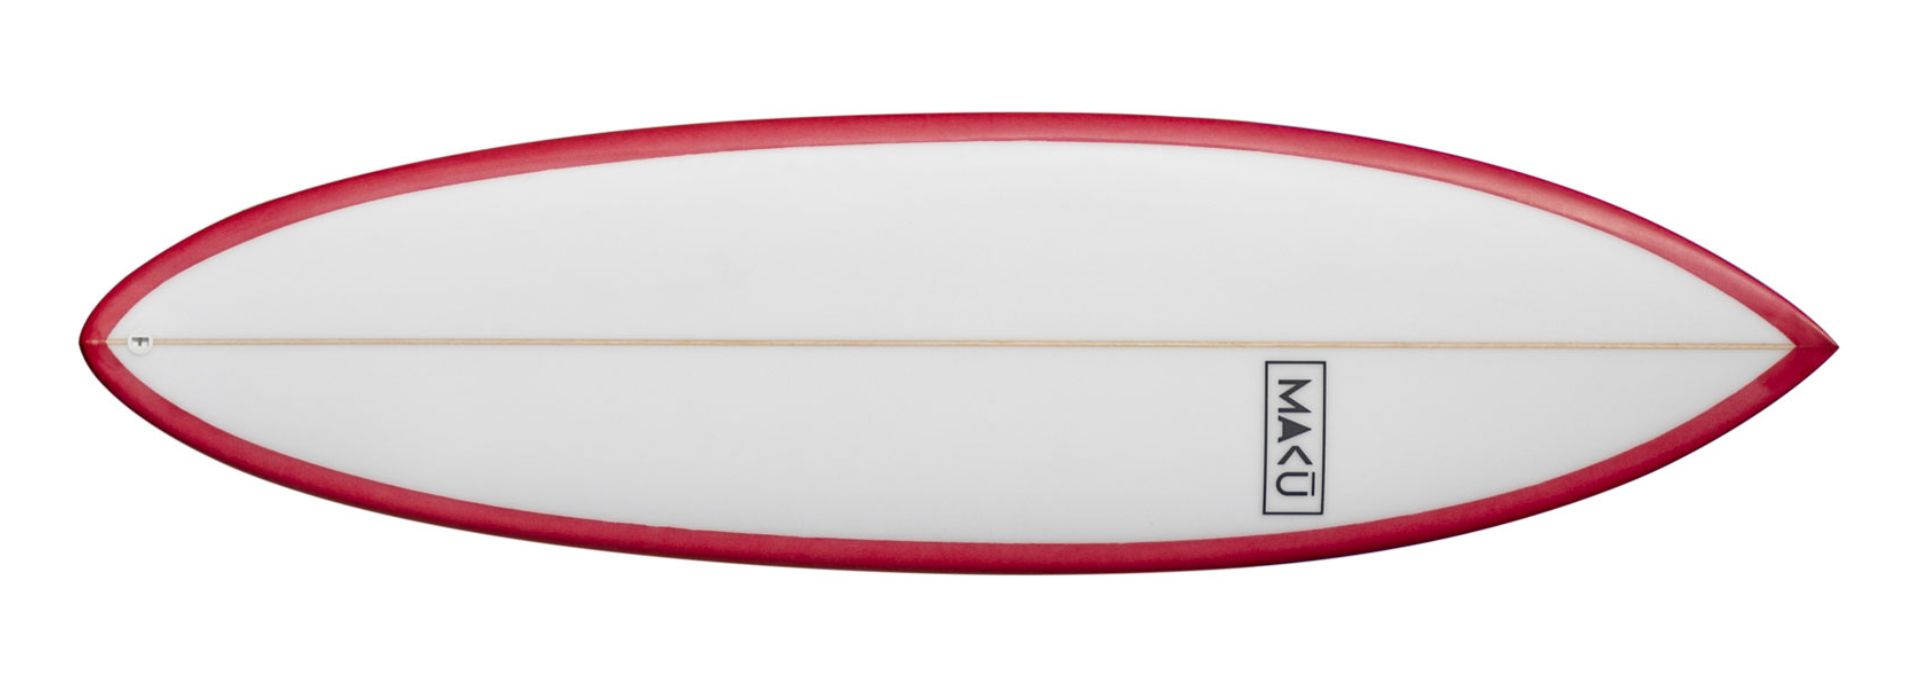 planche de surf de type shortboard